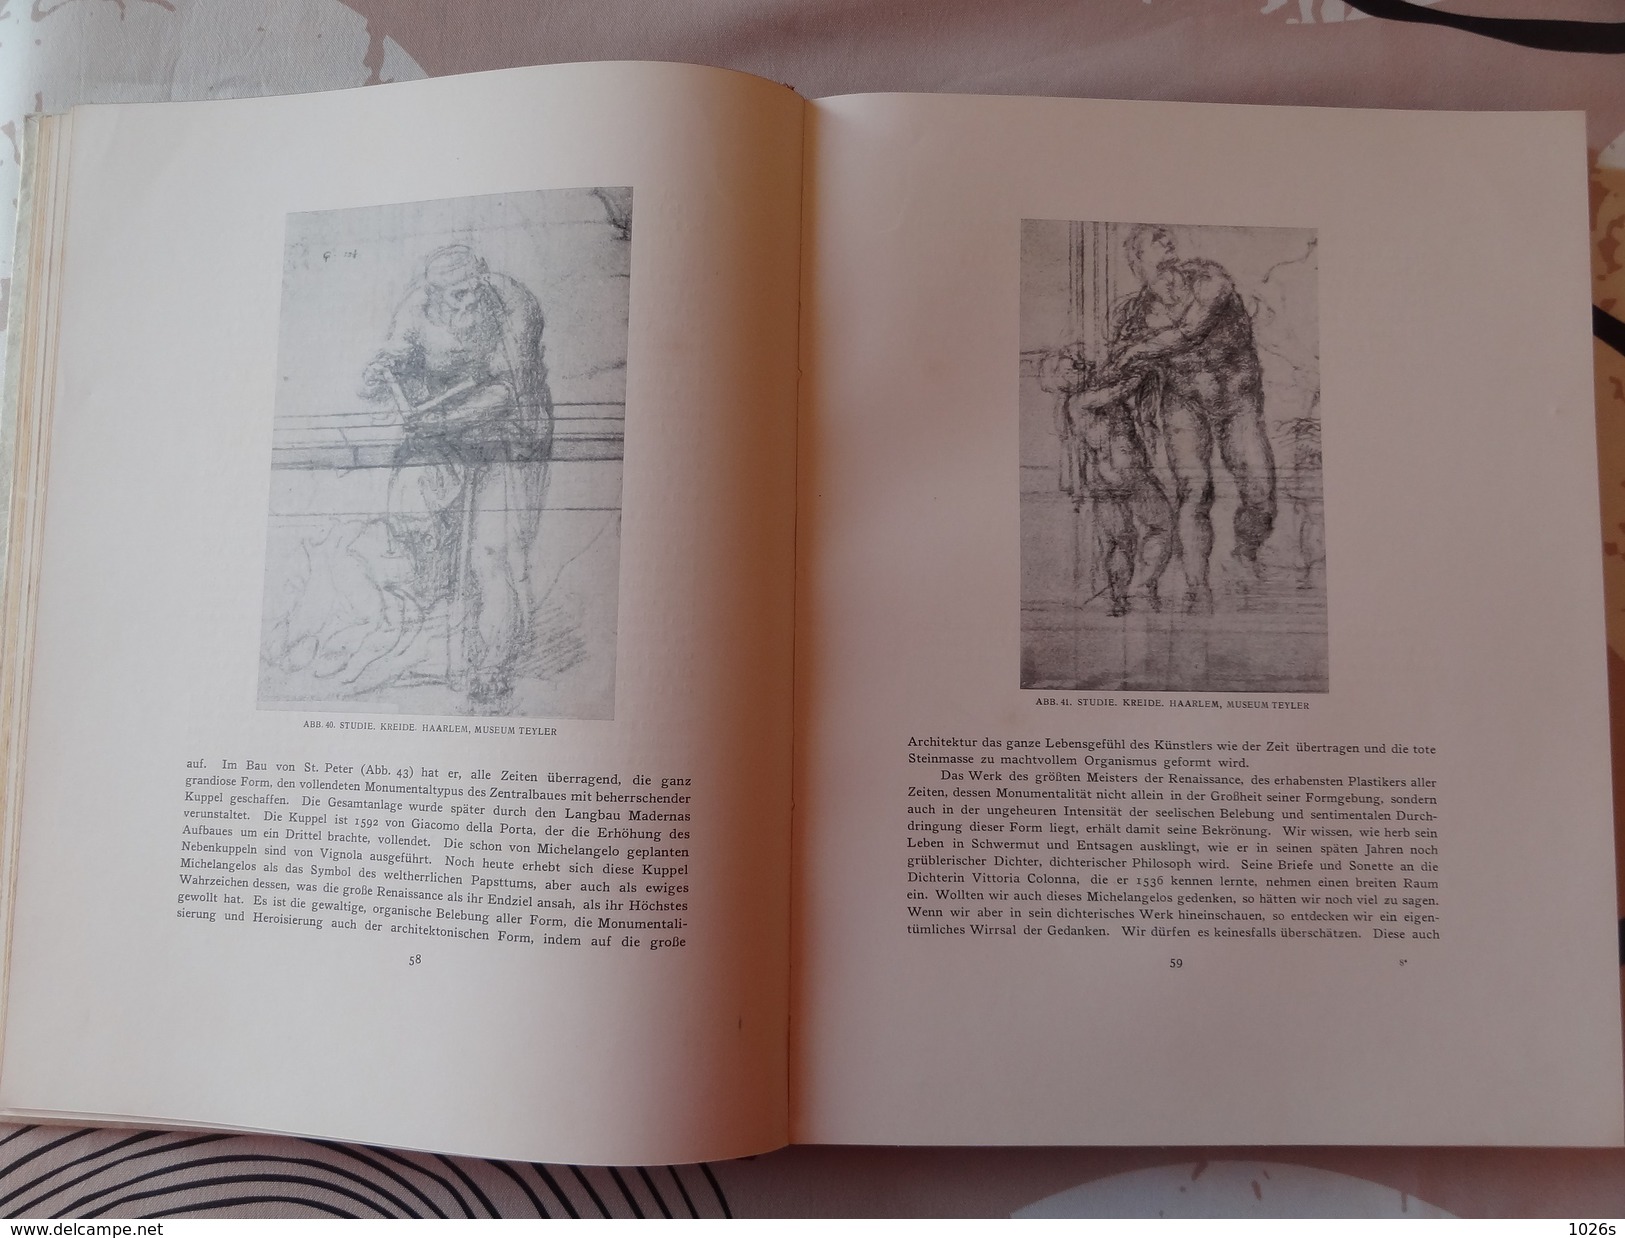 LIVRE D'ART SUR MICHELANGELO DE 1923 PAR FRITZ KNAPP PAR LES EDITIONS F.BRUCKMANN - MUNCHEN - Museums & Exhibitions